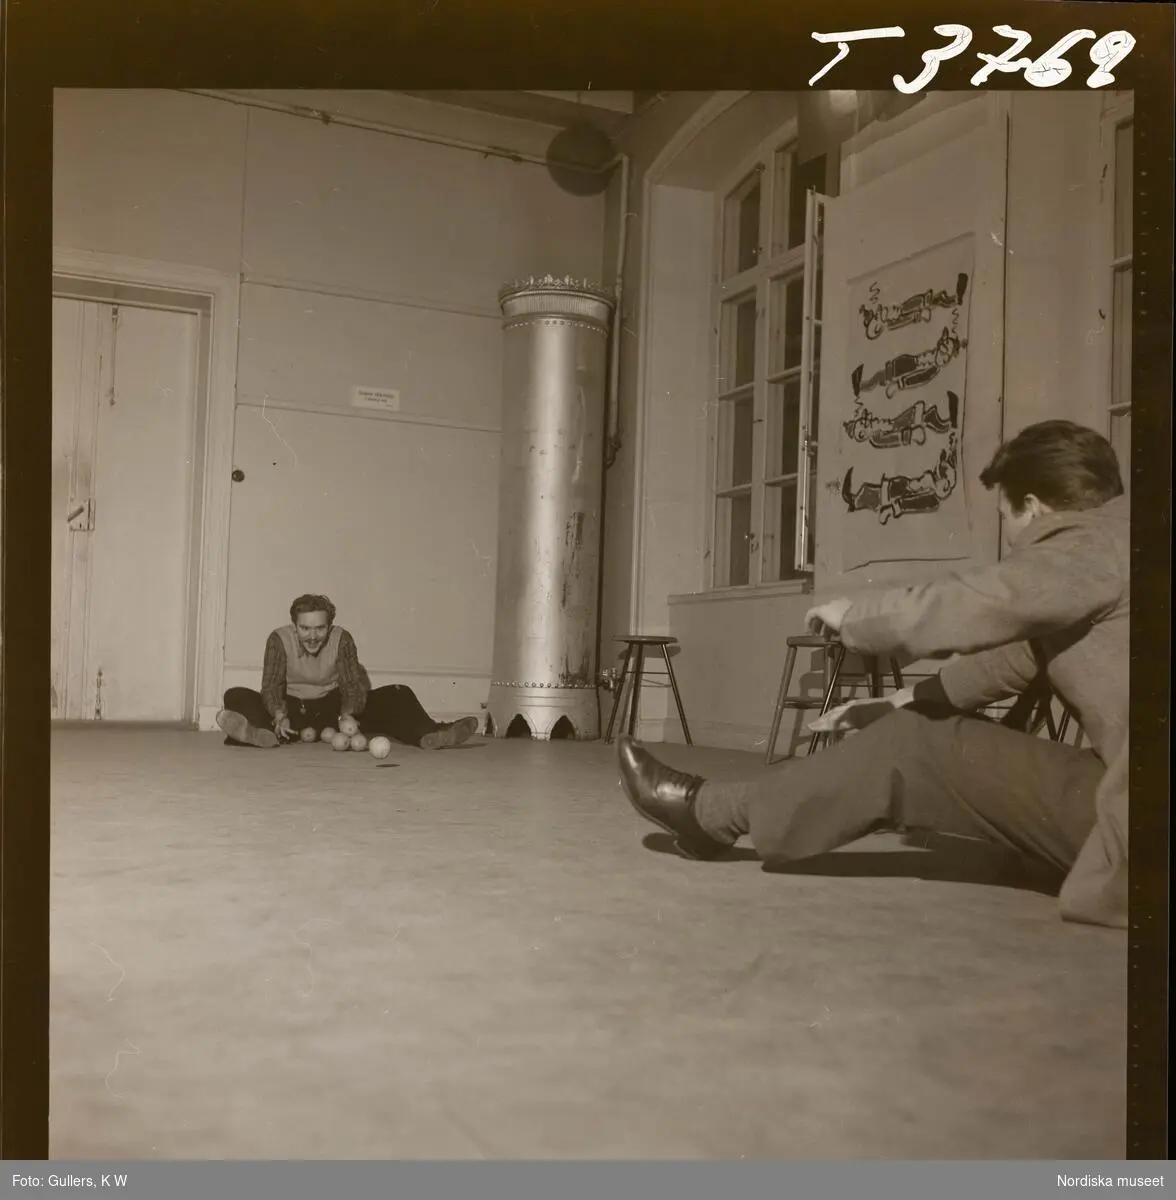 1677 B Konstfackskolan (tösen Boheman). Lek och spel i ateljén. Två manliga elever sitter på golvet och rullar bollar emellan sig.